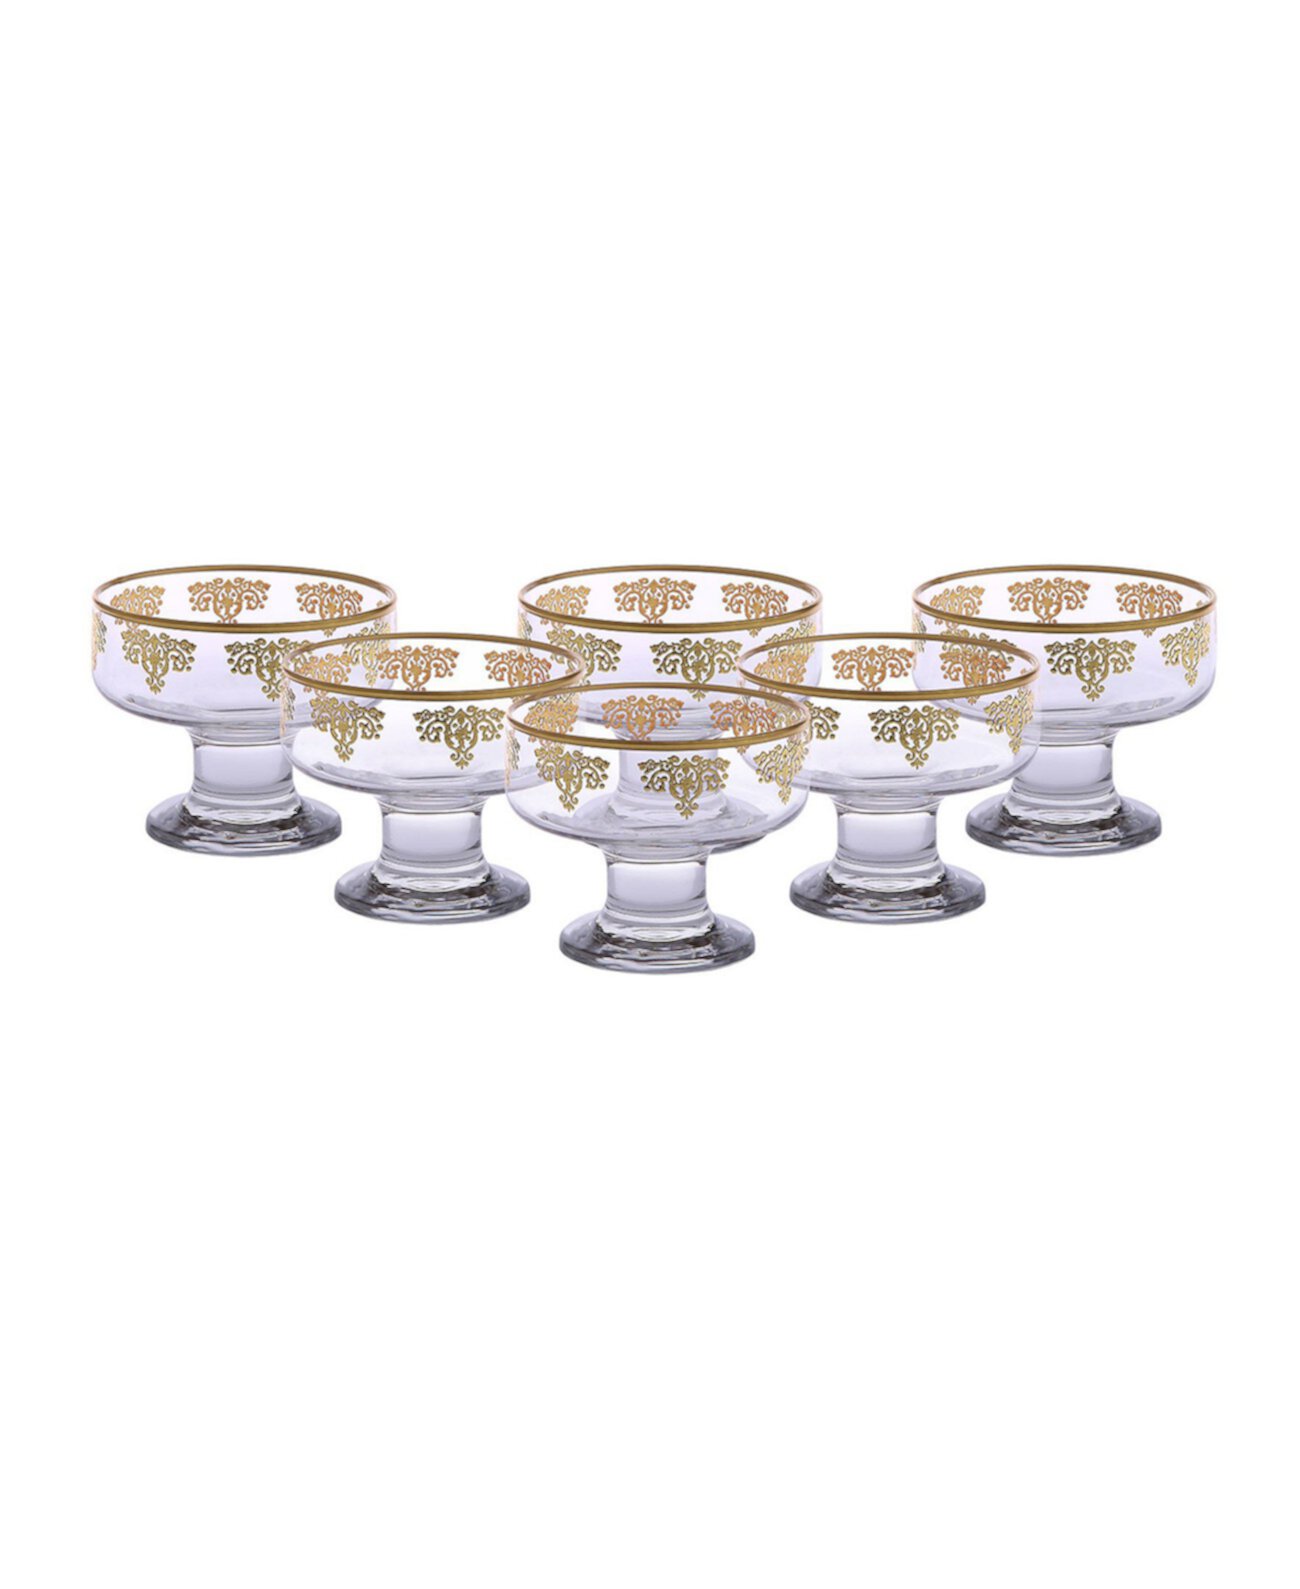 Десертные тарелки с дизайном из золота 585 пробы, набор из 6 шт. Classic Touch